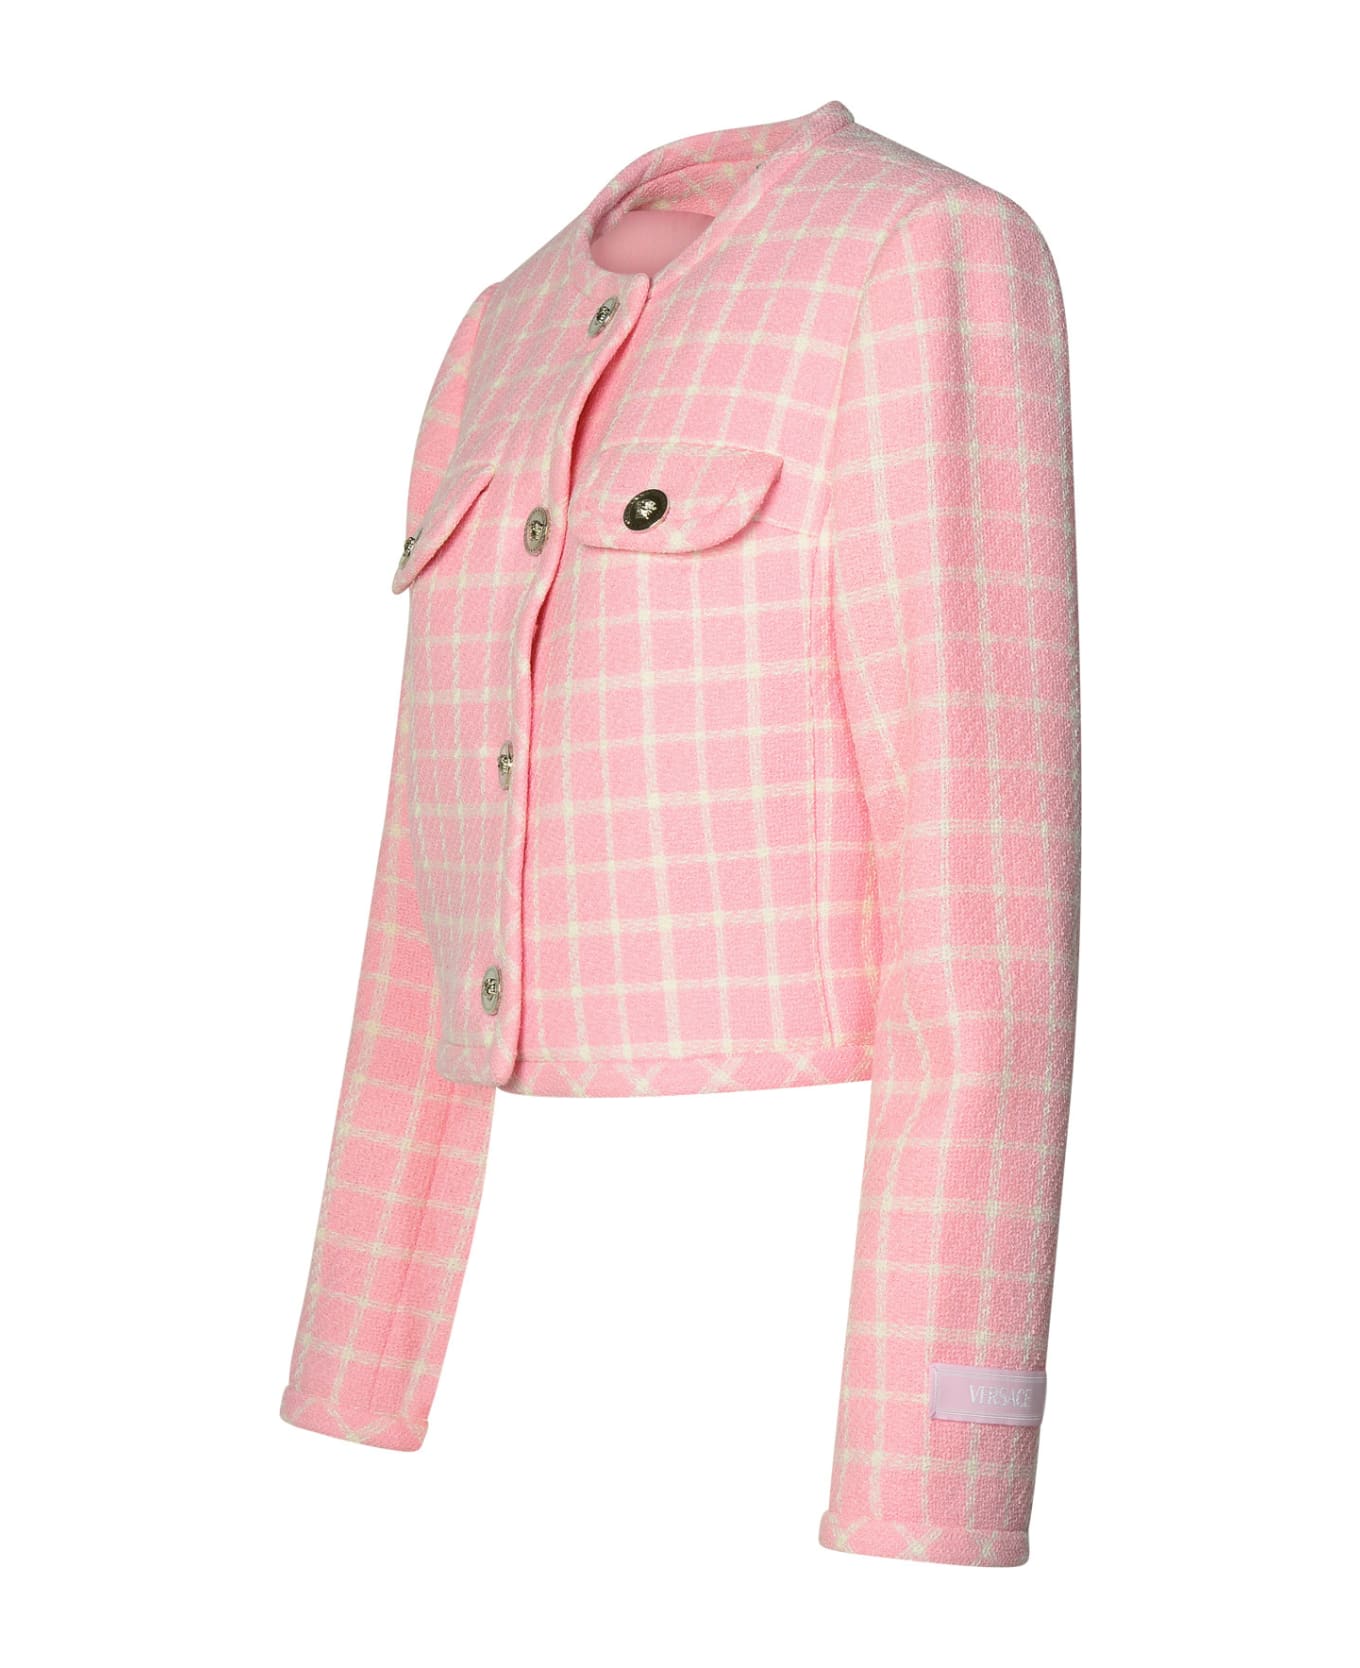 Versace Virgin Wool Blend Jacket - Pastel pink + white ジャケット